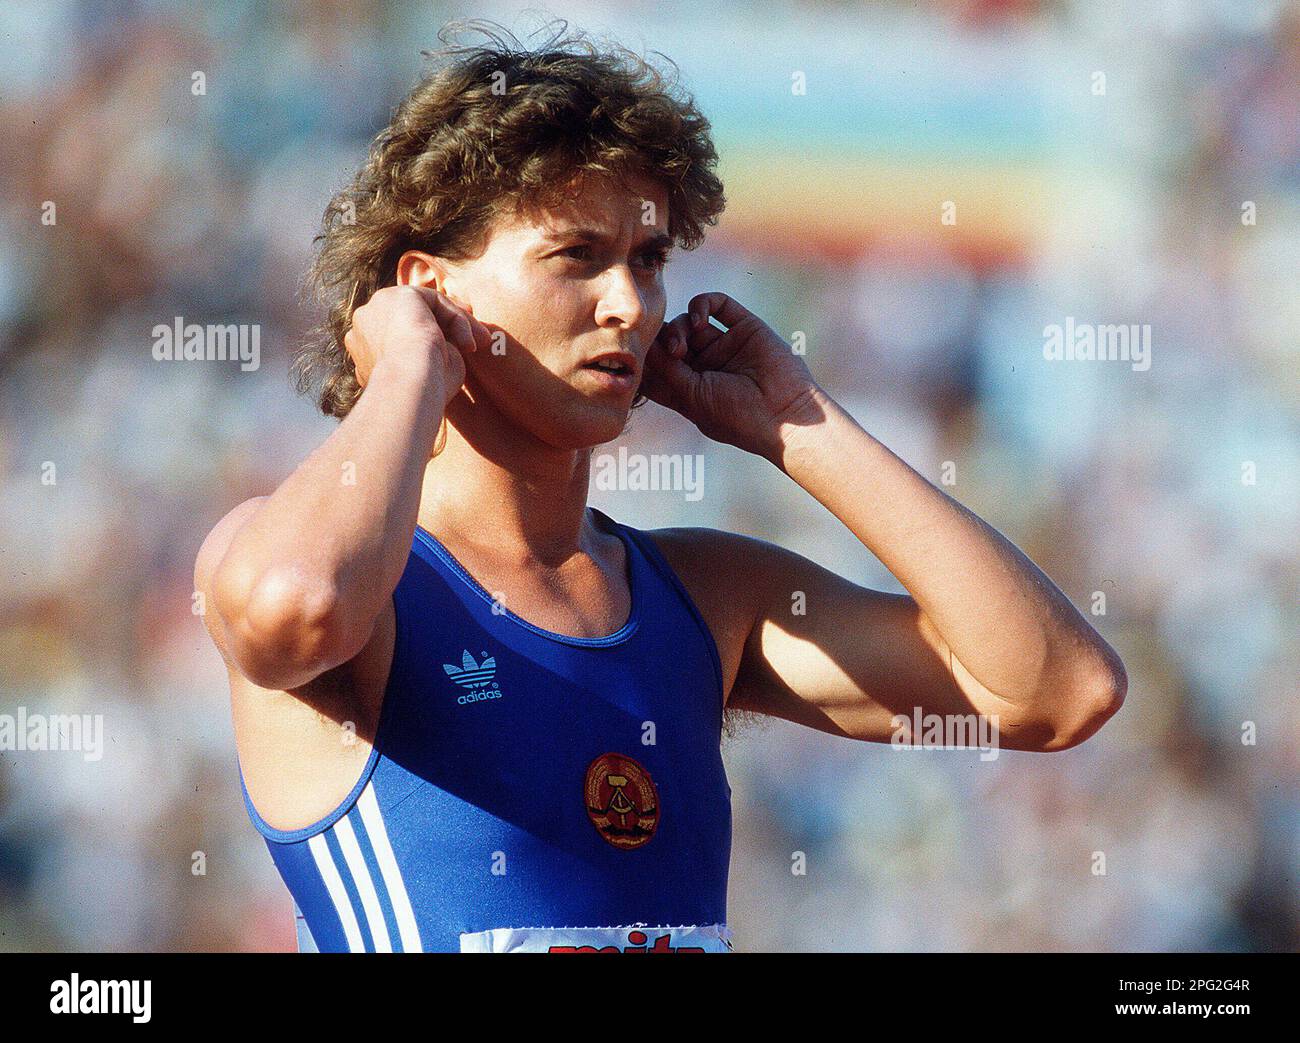 PHOTO D'ARCHIVE: Marlies GOEHR sera 65 sur 21 mars 2023, Marlies GOEHR, OELSNER, OELSNER, GOHR, GDR, athlète, avant le début de la course féminine de 100 m, course de relais d'action, 4 x 100 m des femmes, aux Championnats du monde d'athlétisme à Rome de 29 août à 6 septembre 1987, ?SVEN SIMON, Princess-Luise-Str.41#45479 Muelheim/Ruhr#tel.BL8/9413250#fax 0208/9413260#KTO 1428150 Commerzbank 36040039# E www.SvenSimon.net#e-mail:SvenSimon@t-online.de. Banque D'Images